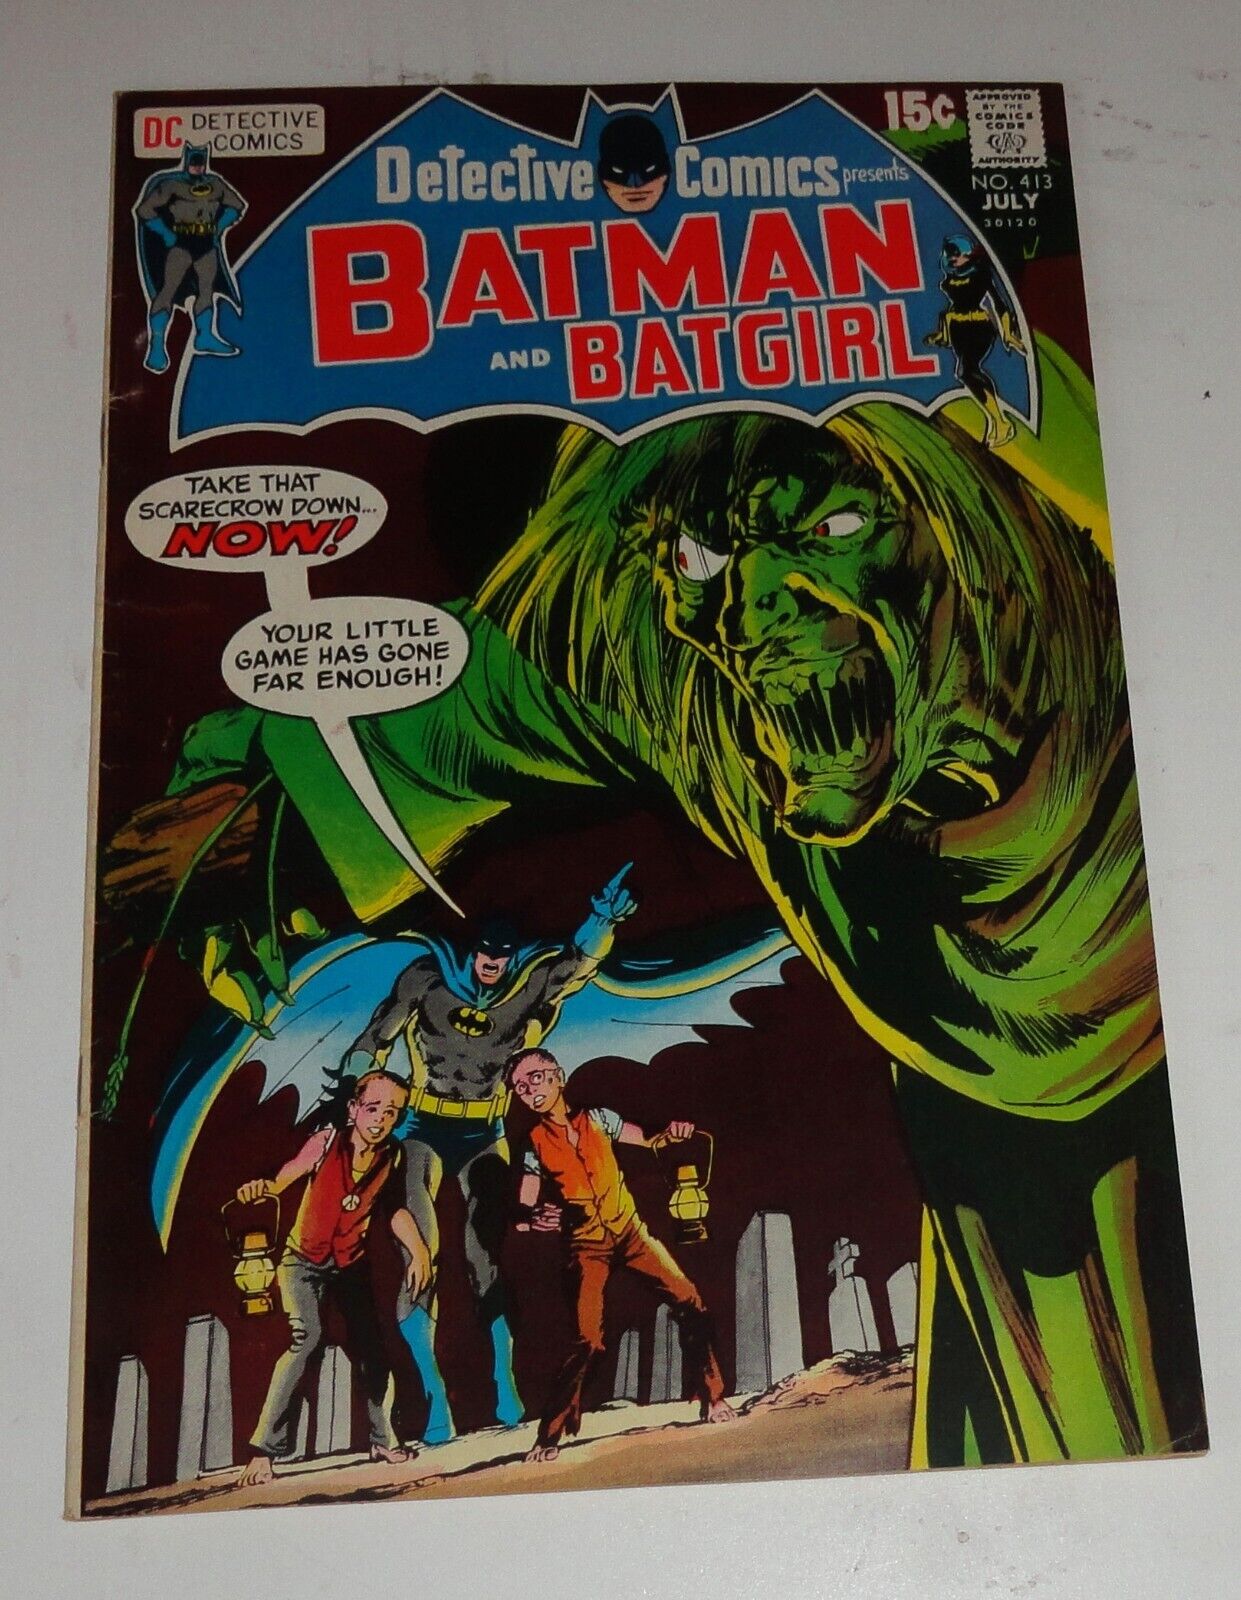 BATMAN # DETECTIVE COMICS #413 NEAL ADAMS CLASSIC COVER VF/VF+